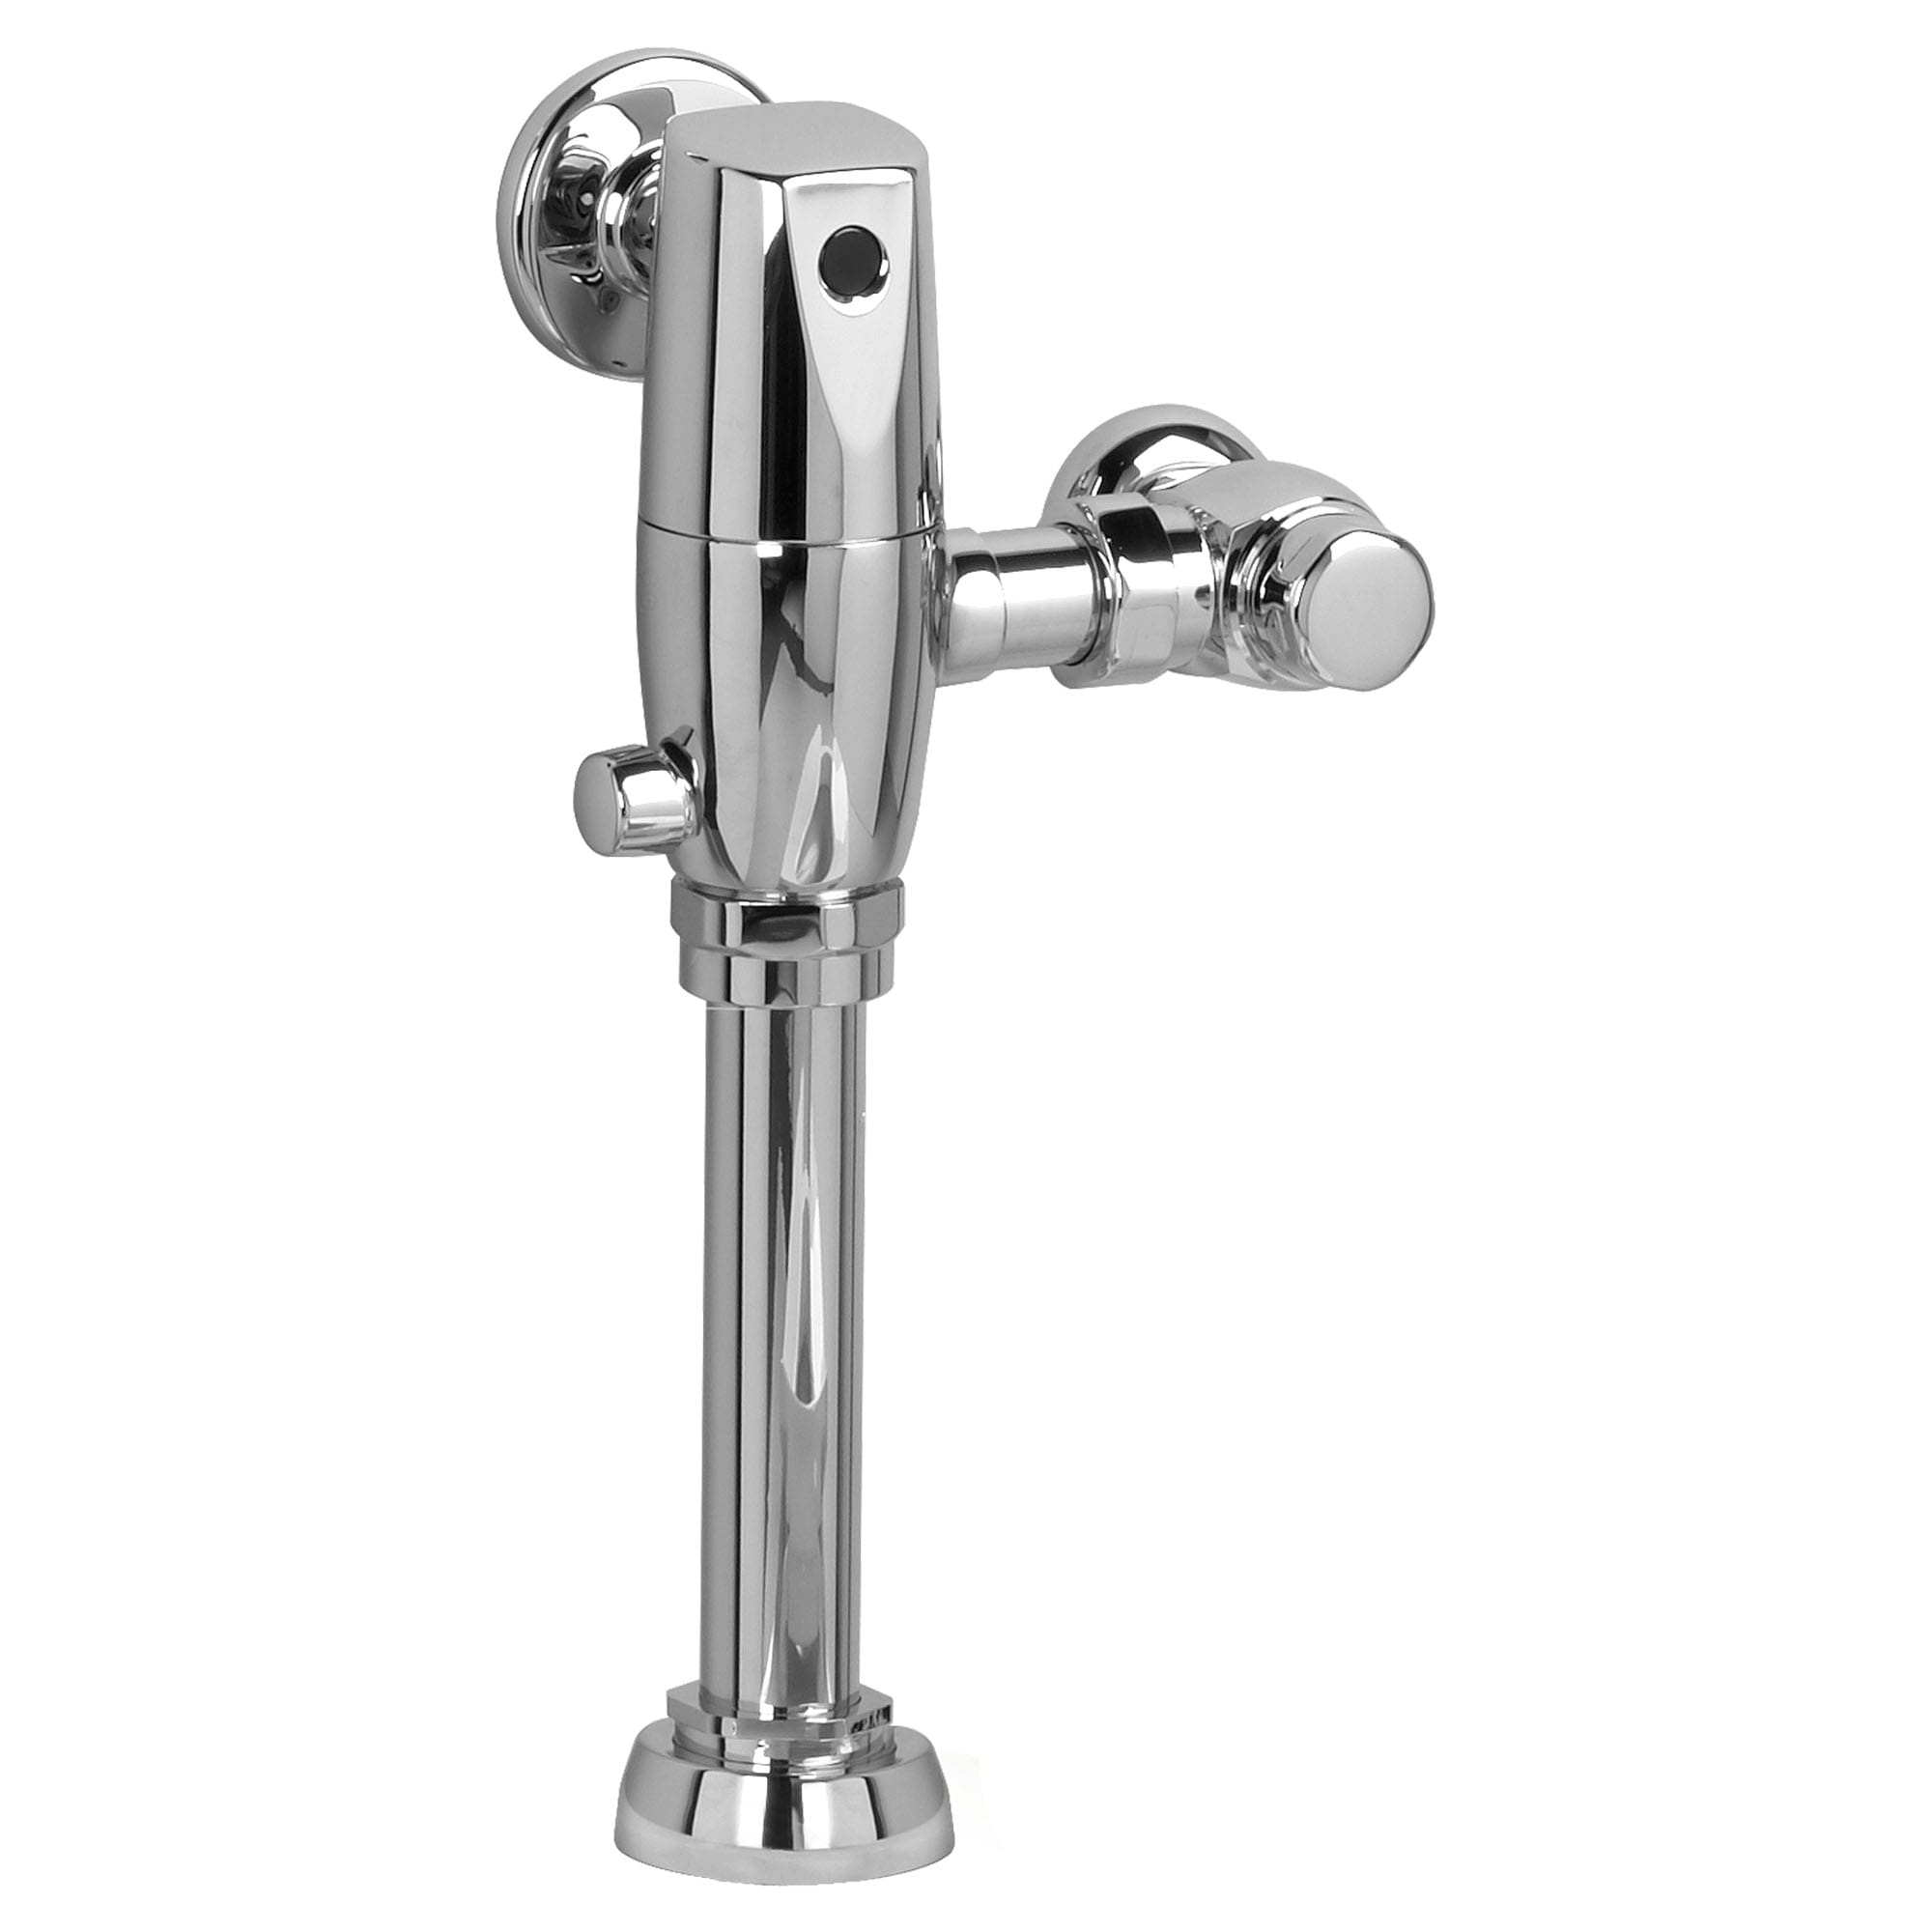 Ultima™ Selectronic - robinet de chasse à piston sans contact pour toilette, modèle de base, à double rinçage 1,6/ 1,1 gpc (6,0/4,2 lpc)